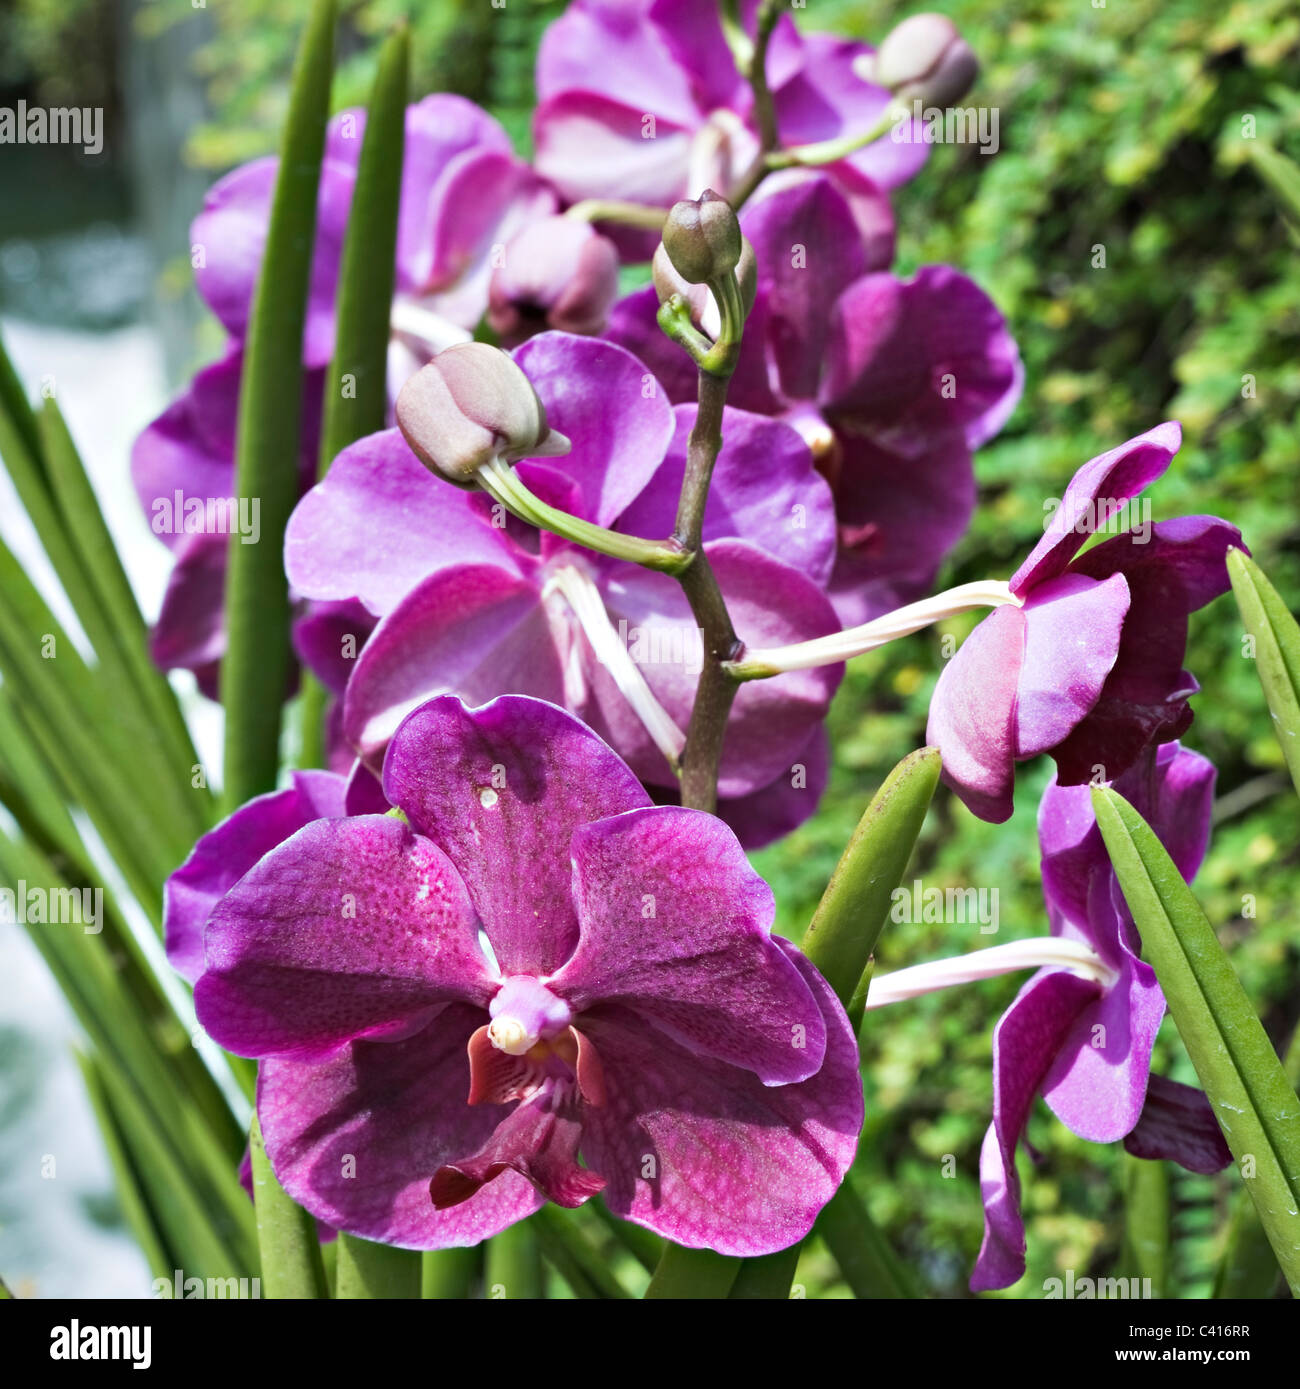 Orchidee blüht in der National Orchid Garden Singapur Republik Singapur Asien Stockfoto